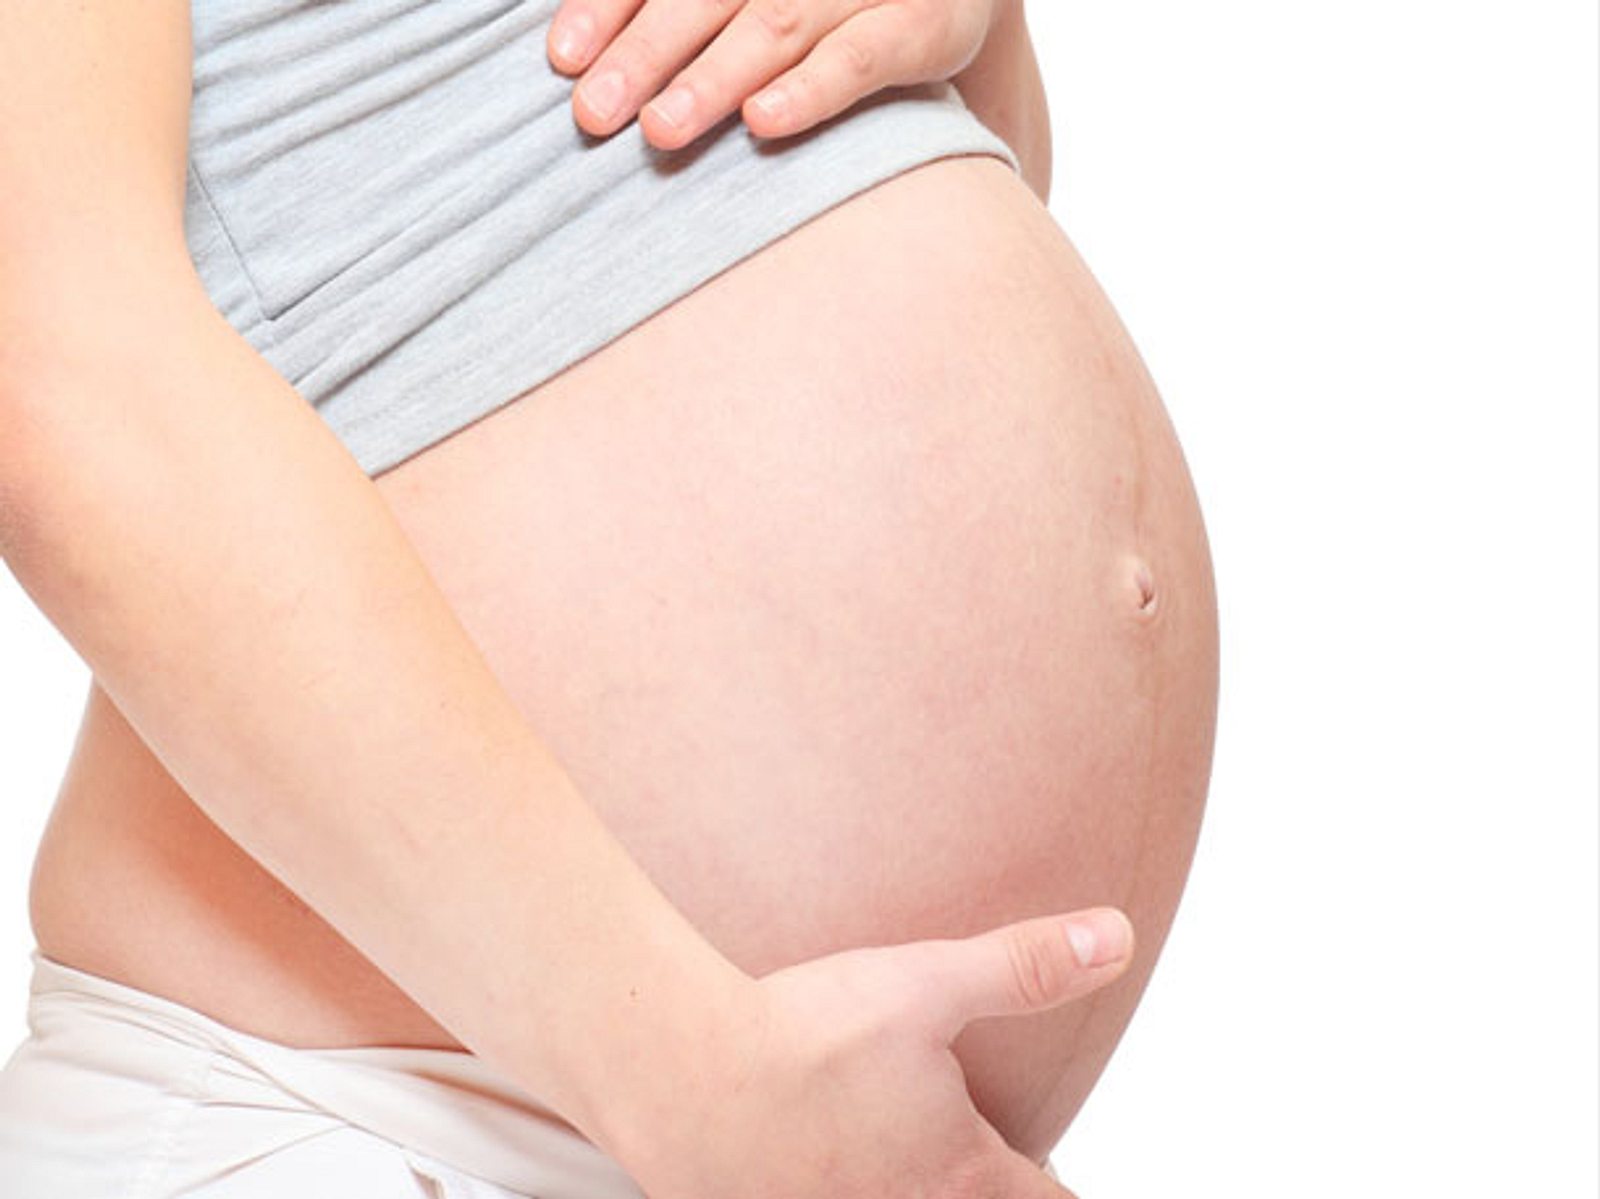 Bauch 1 jahr nach schwangerschaft